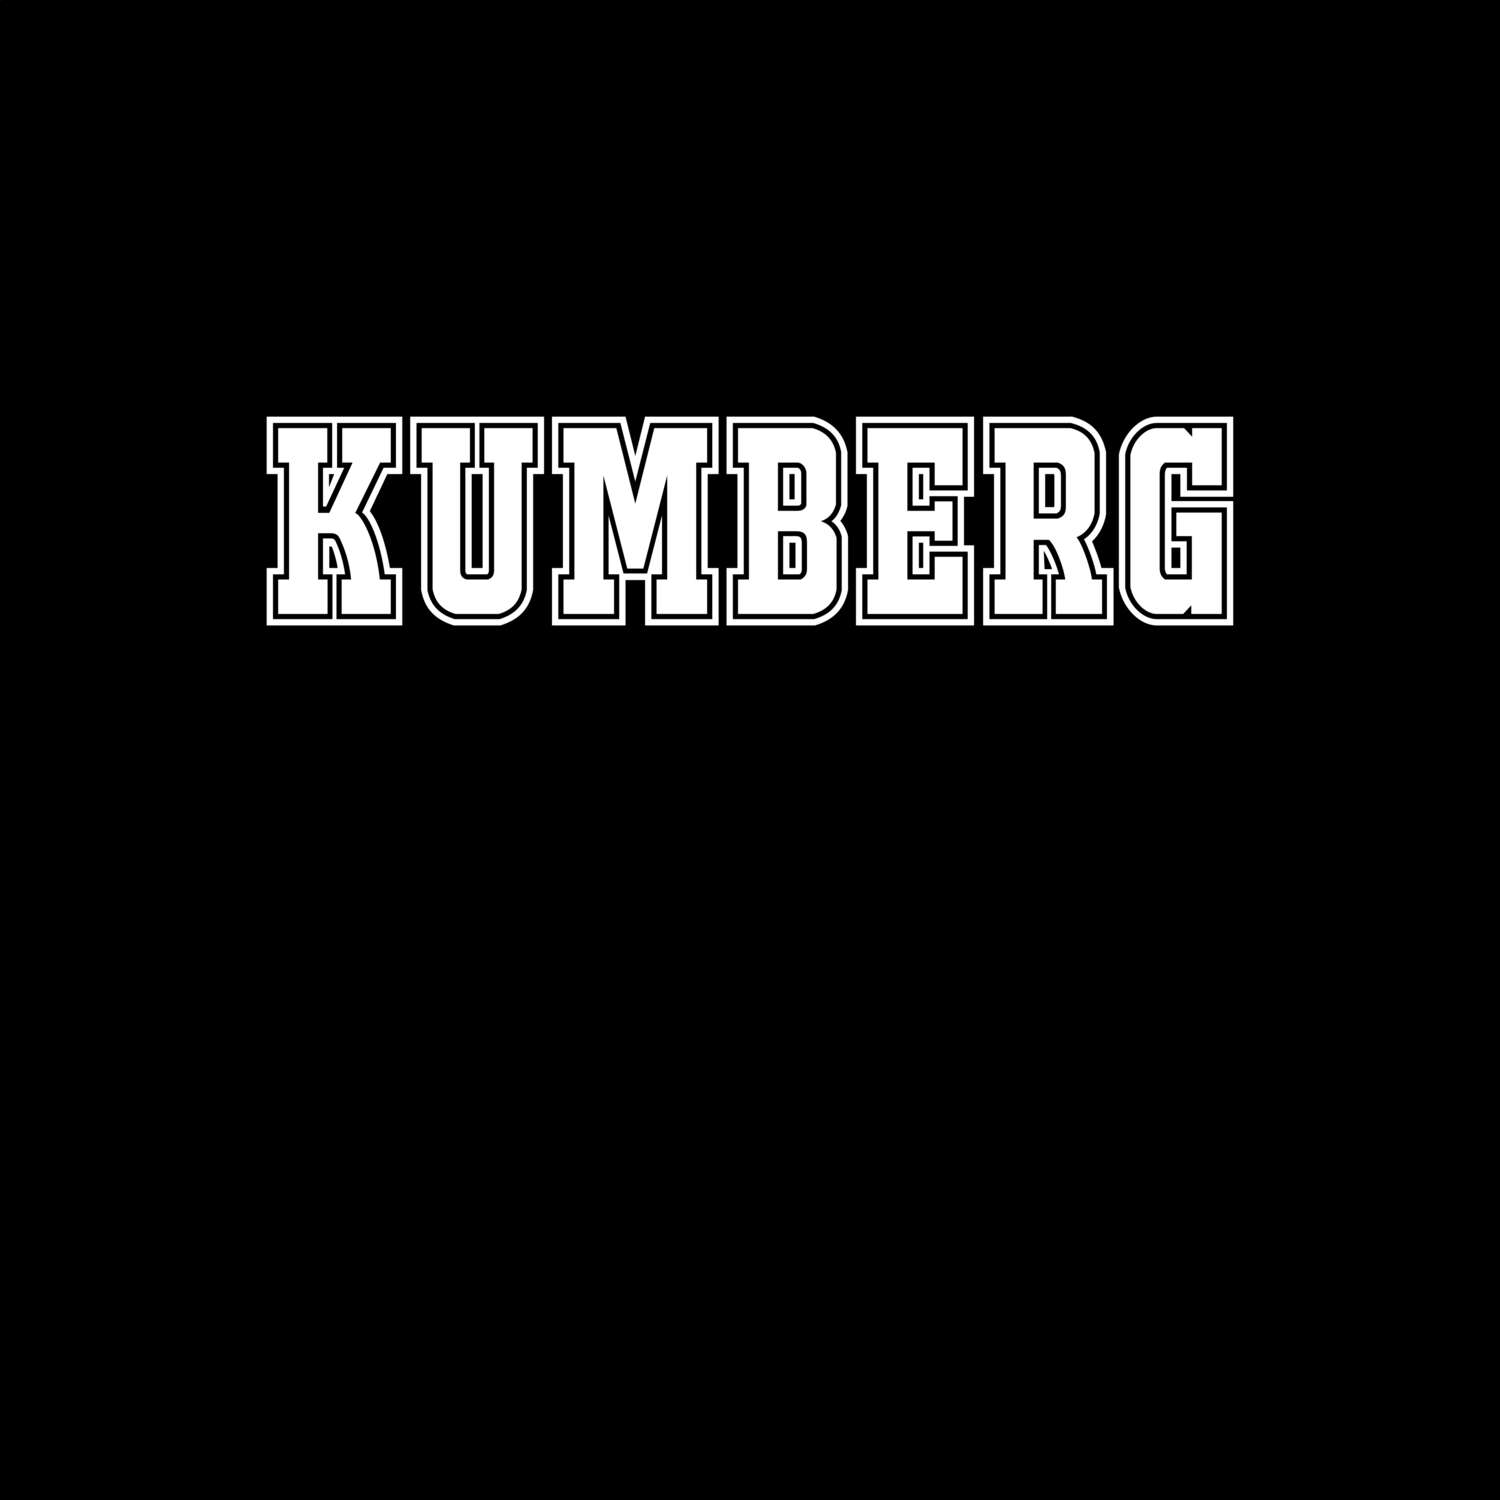 Kumberg T-Shirt »Classic«